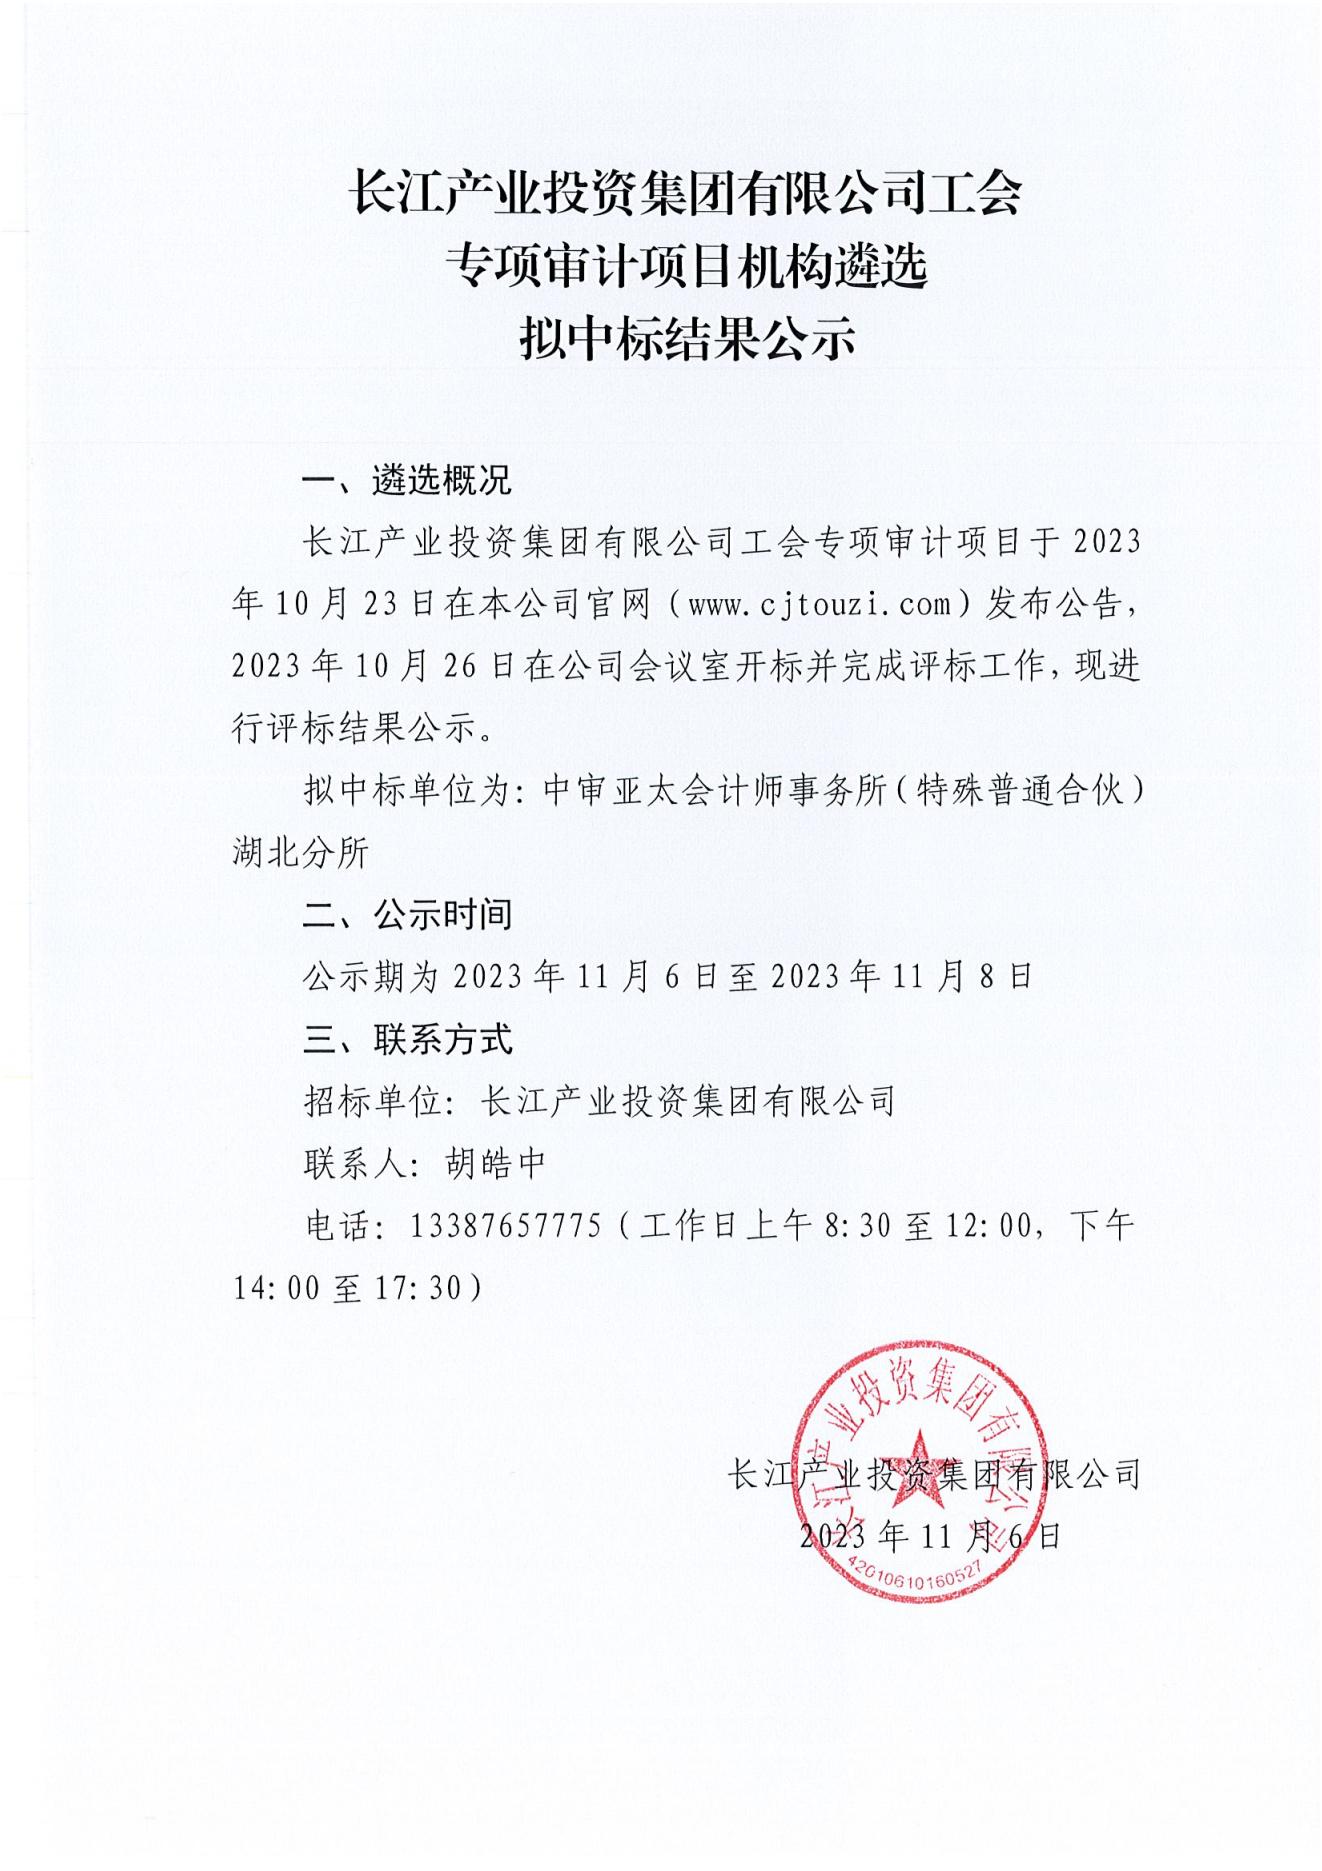 3-2 长江产业投资集团有限公司工会专项审计项目机构遴选中标结果公示（盖章版）.jpg